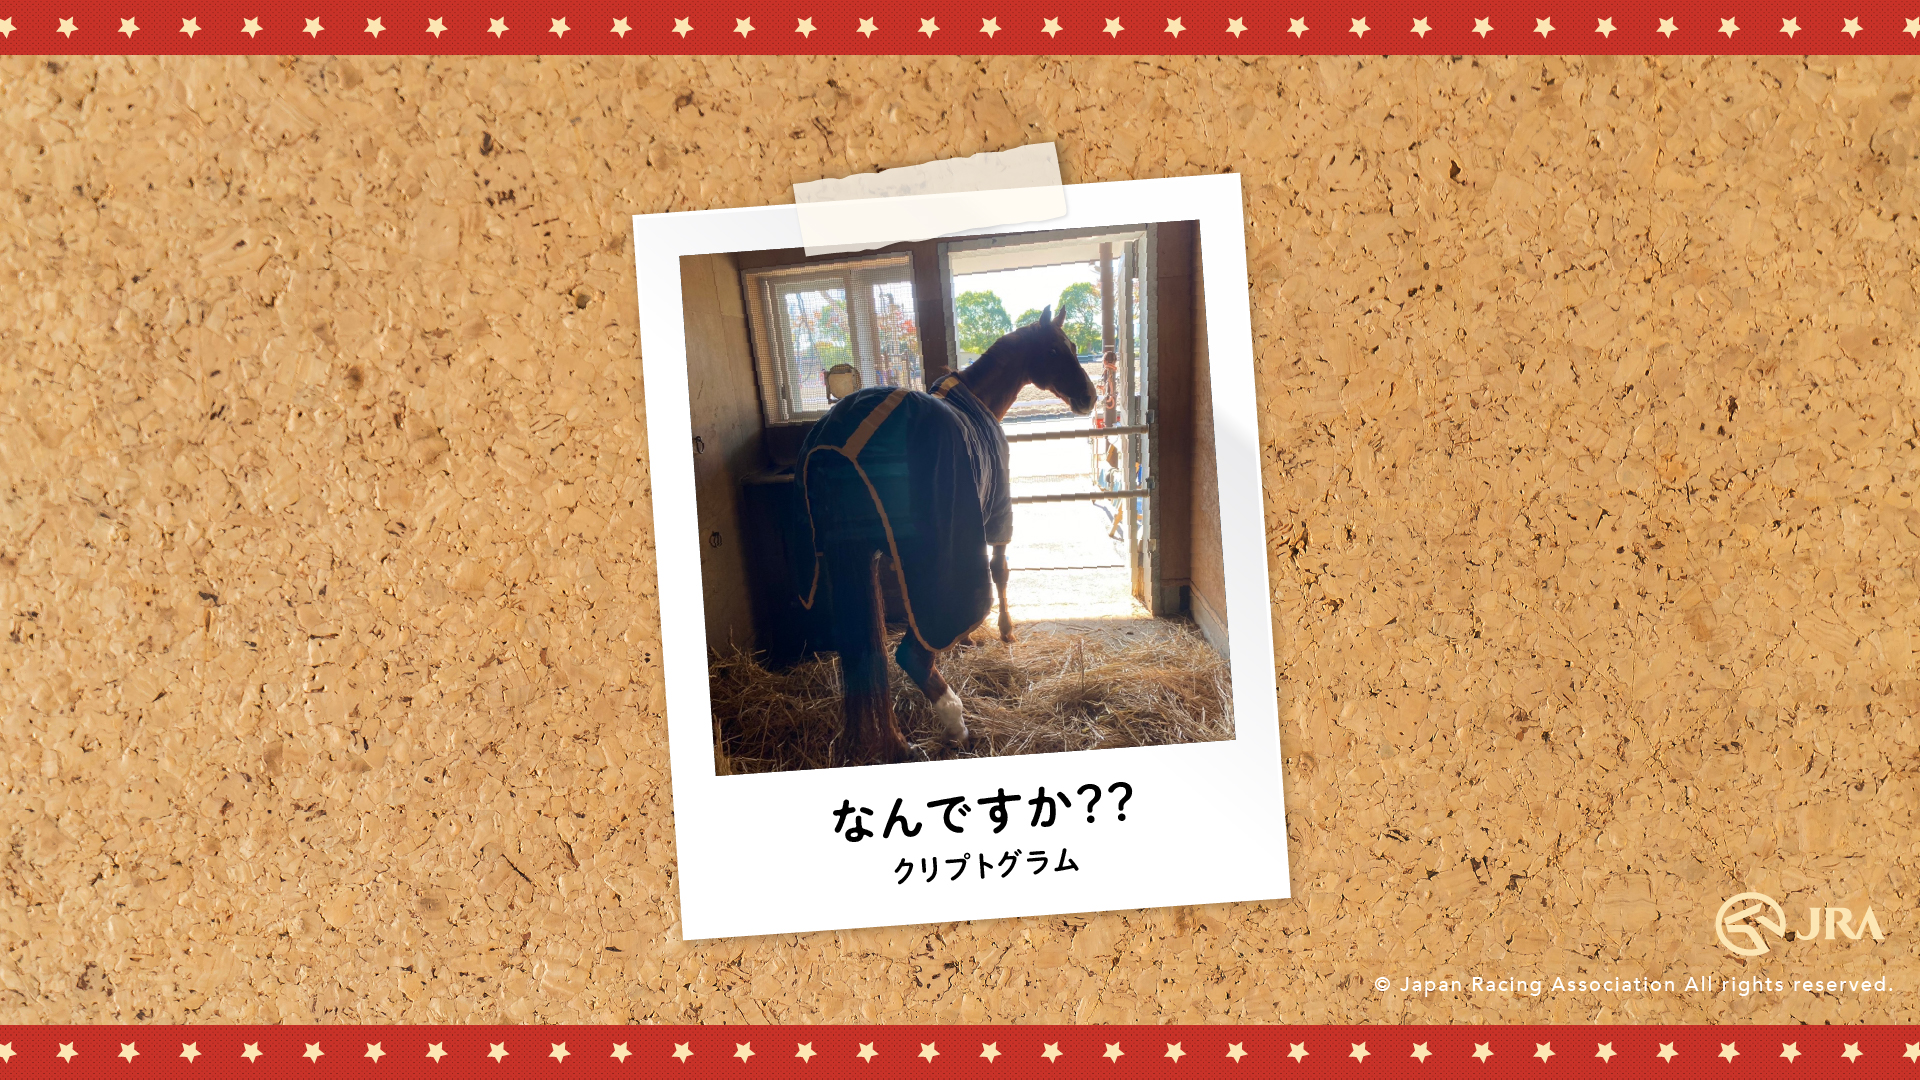 お馬さんのオフショット Jra 東京競馬場乗馬センター